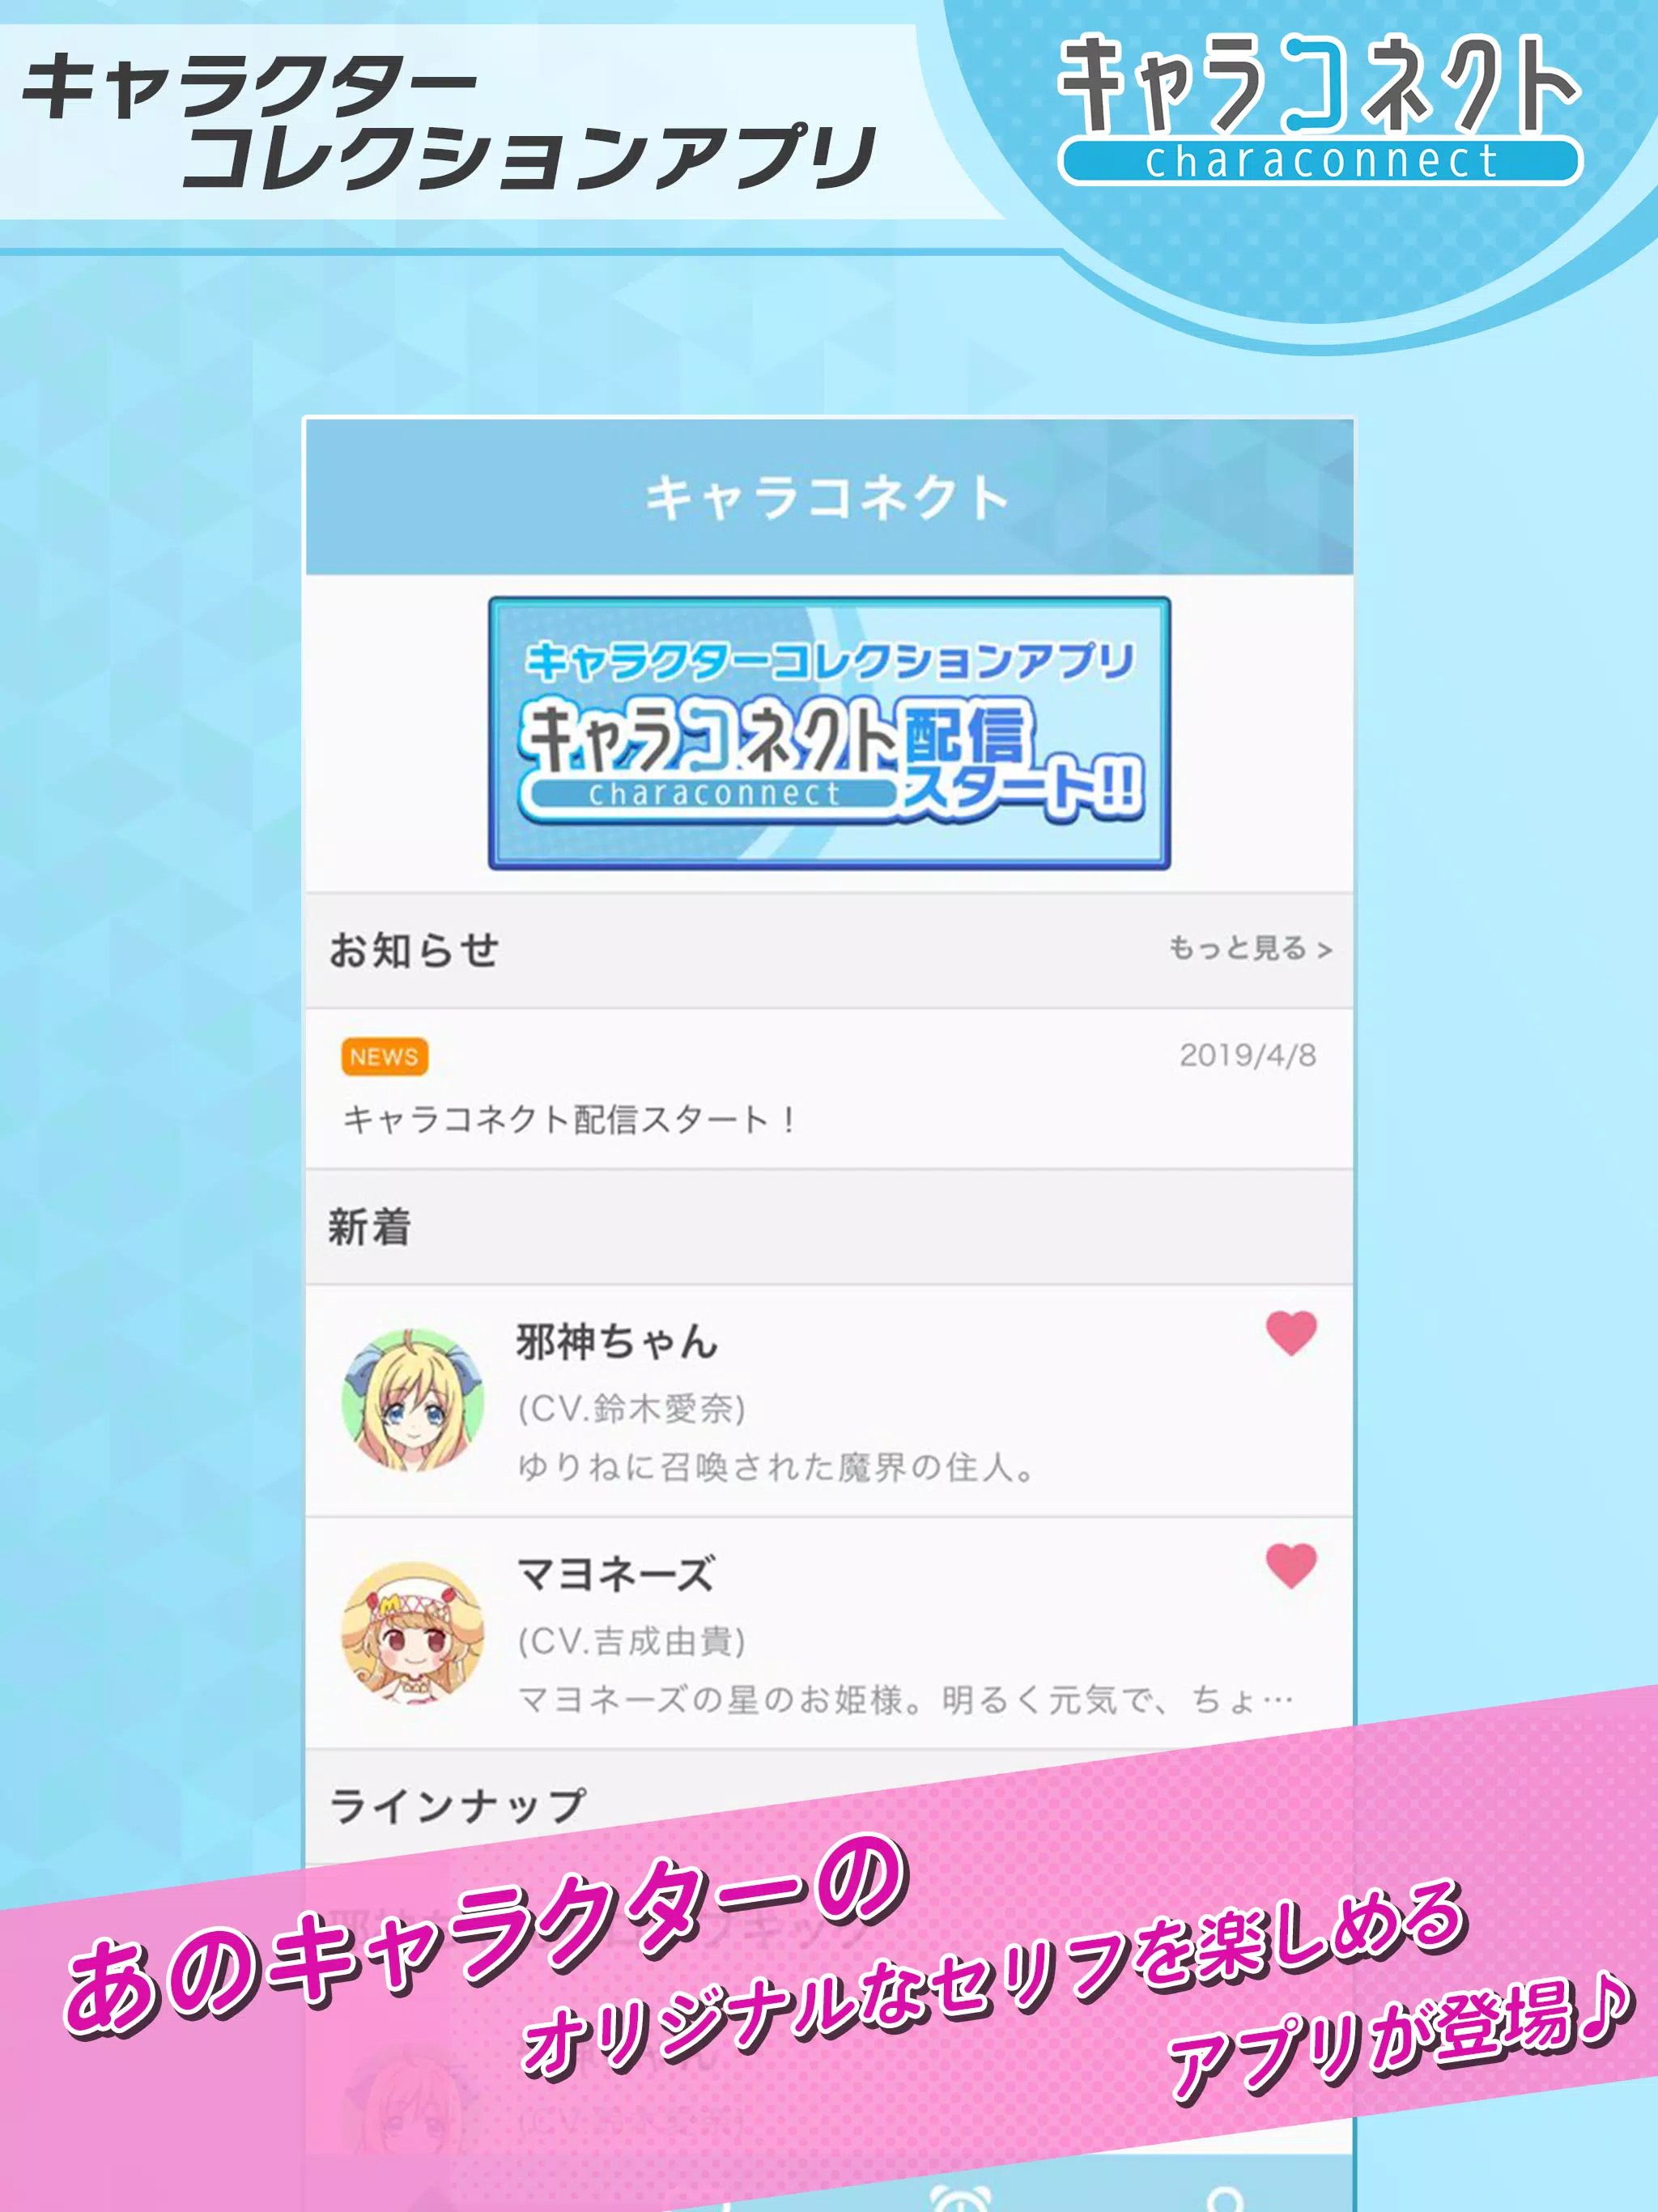 キャラコネクト 有名アニメキャラのオリジナルボイスが楽しめるアプリ For Android Apk Download